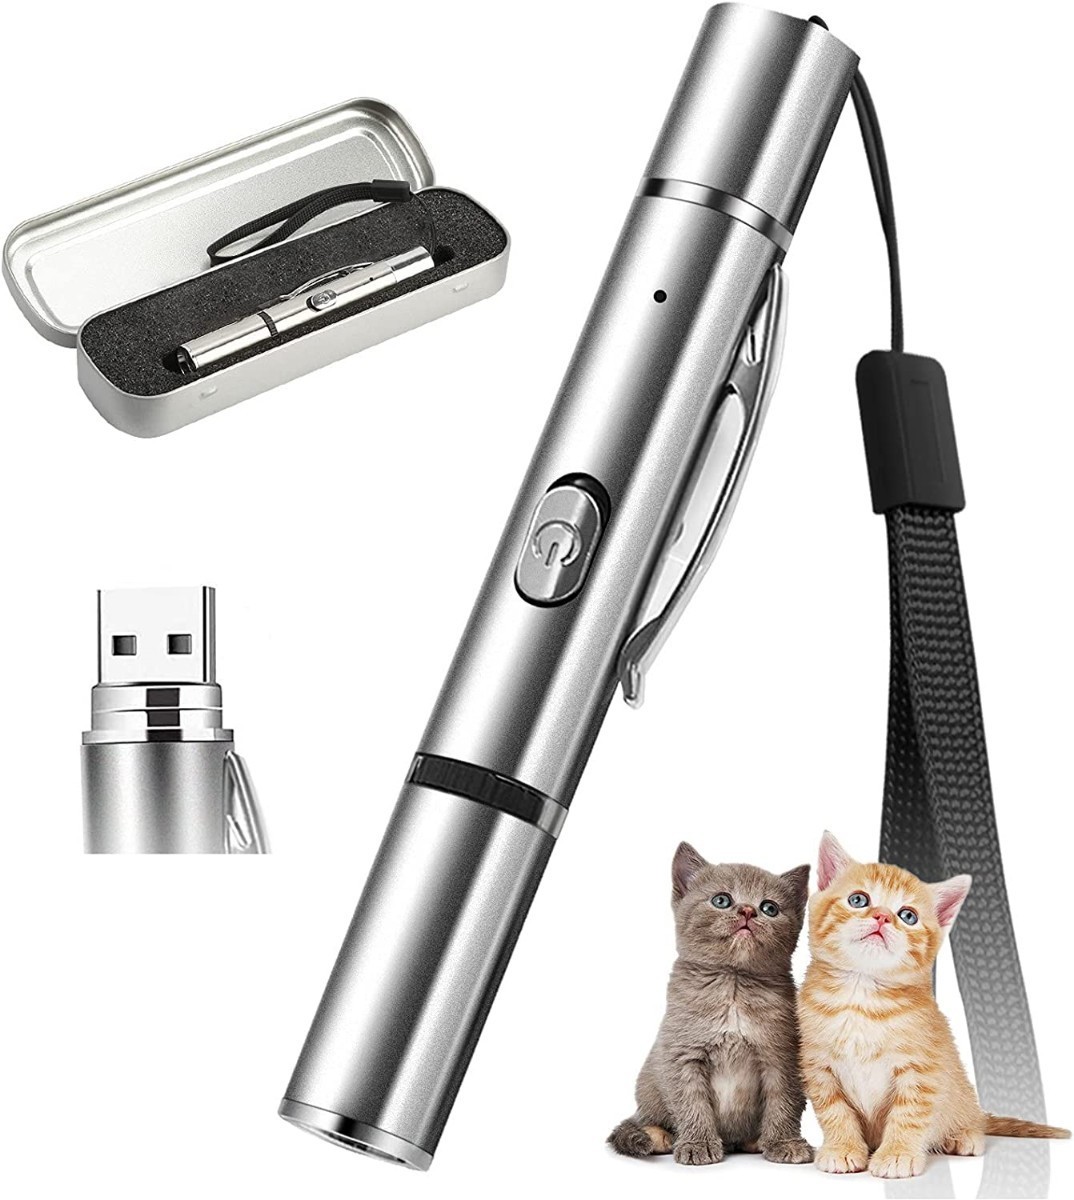 猫 おもちゃ LEDポインター ペンライト 懐中電灯 USB充電式 防災 猫用品